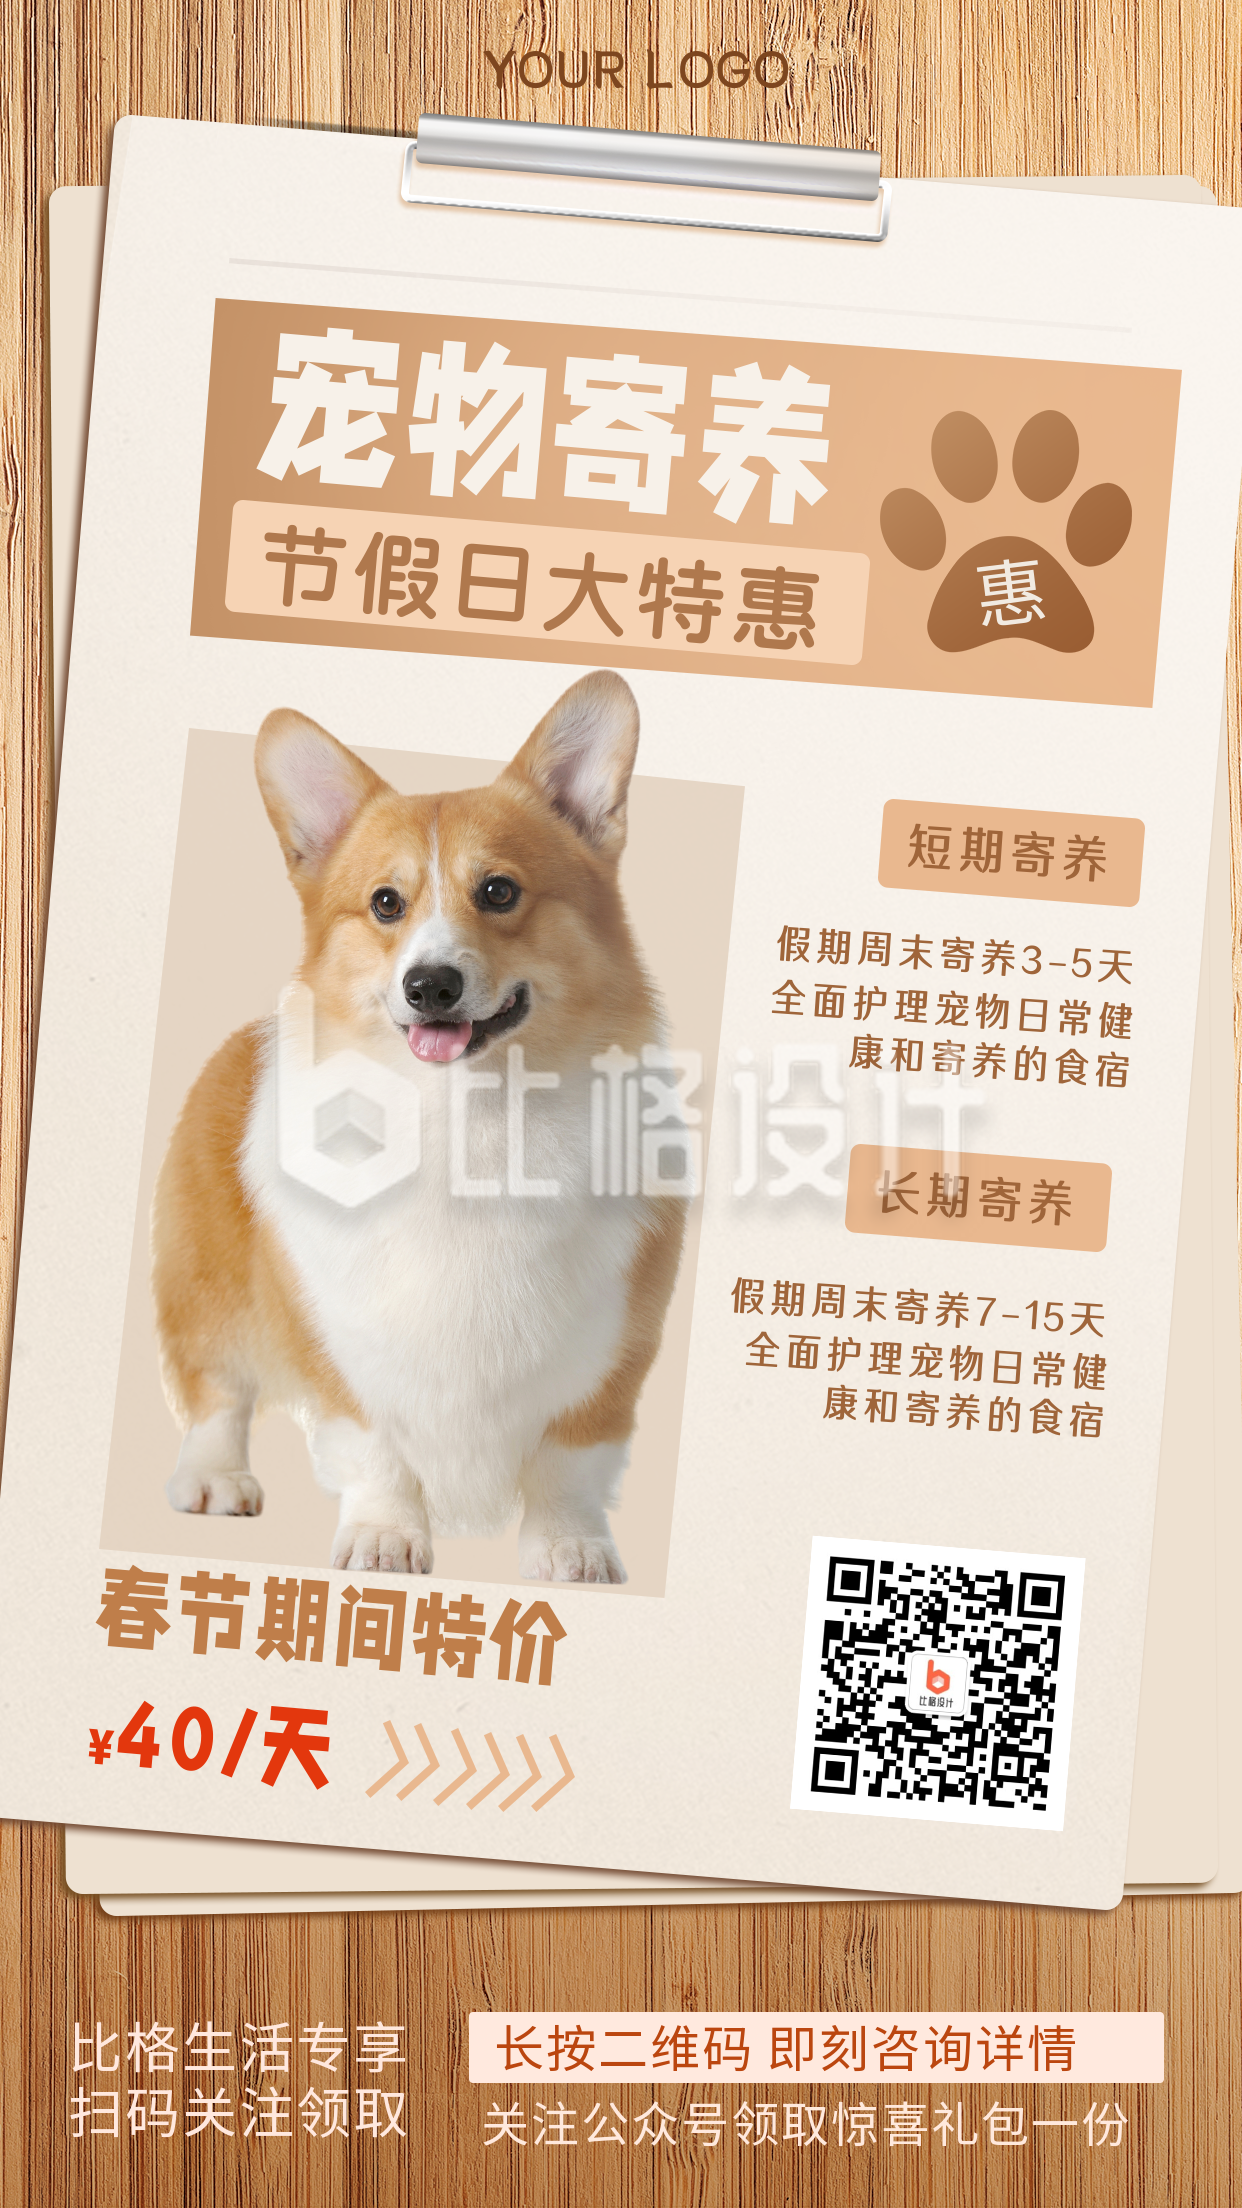 春节宠物寄养活动特惠推广宣传手机海报